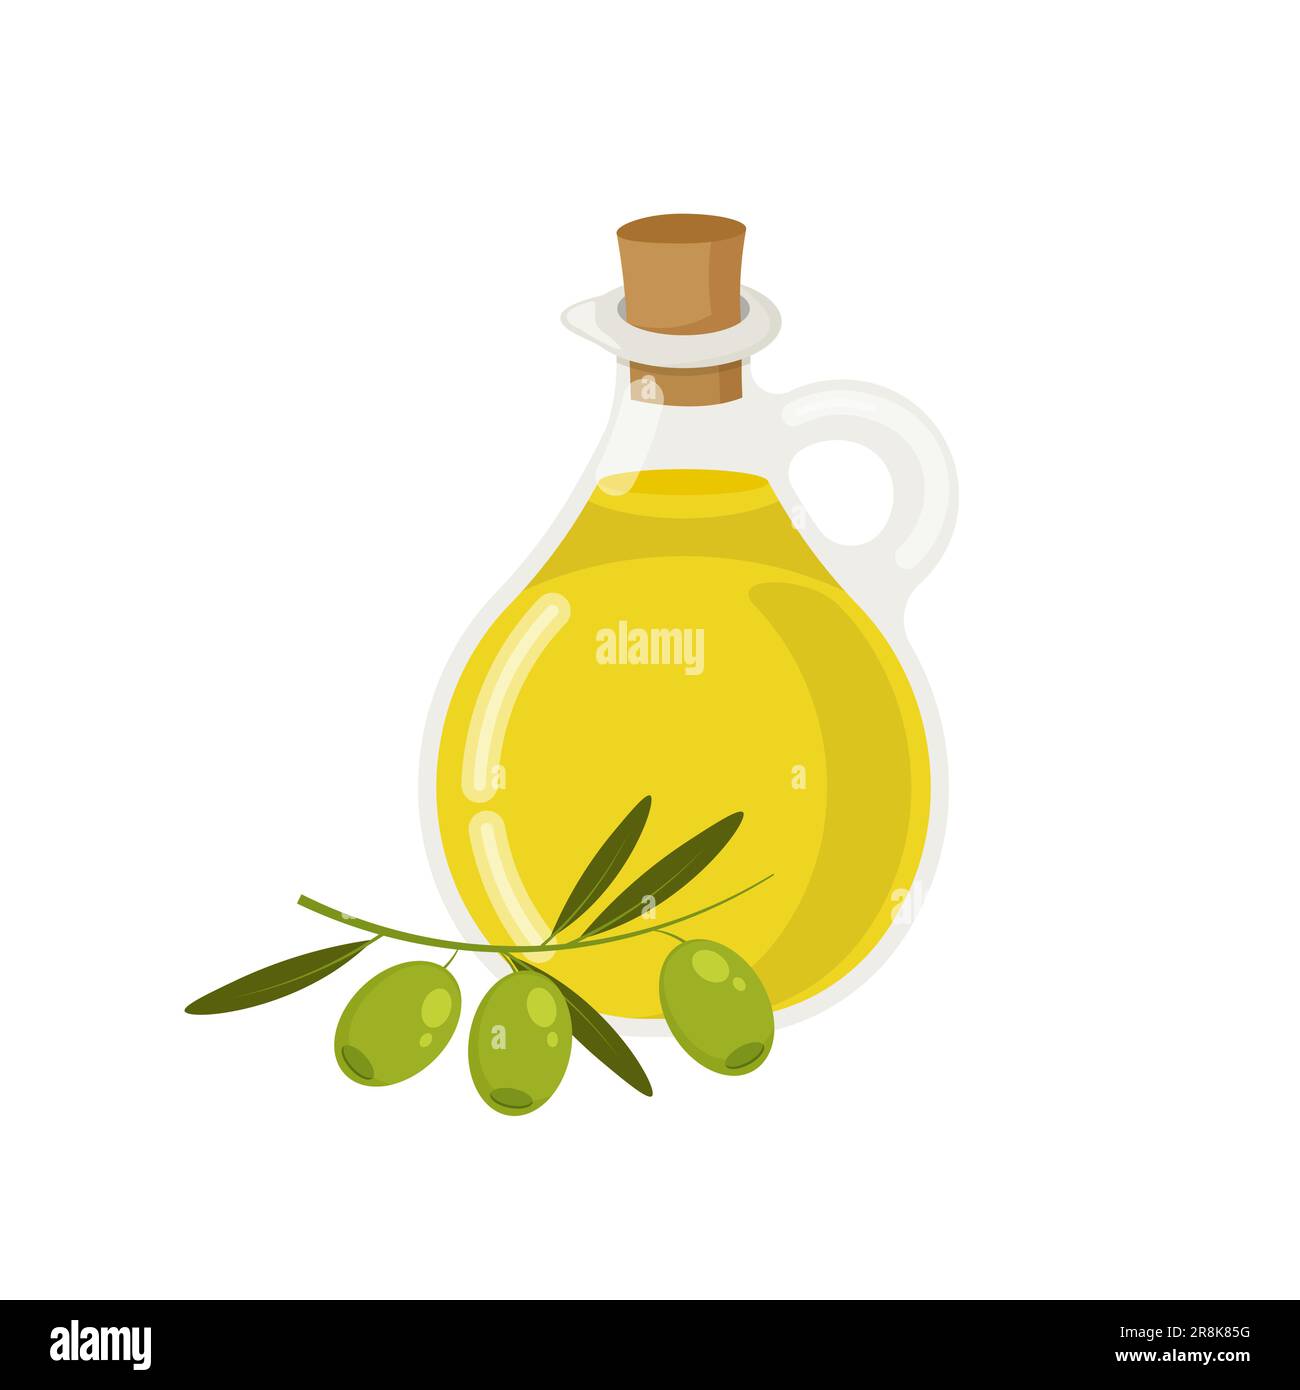 Diseño de botellas para aceite de oliva